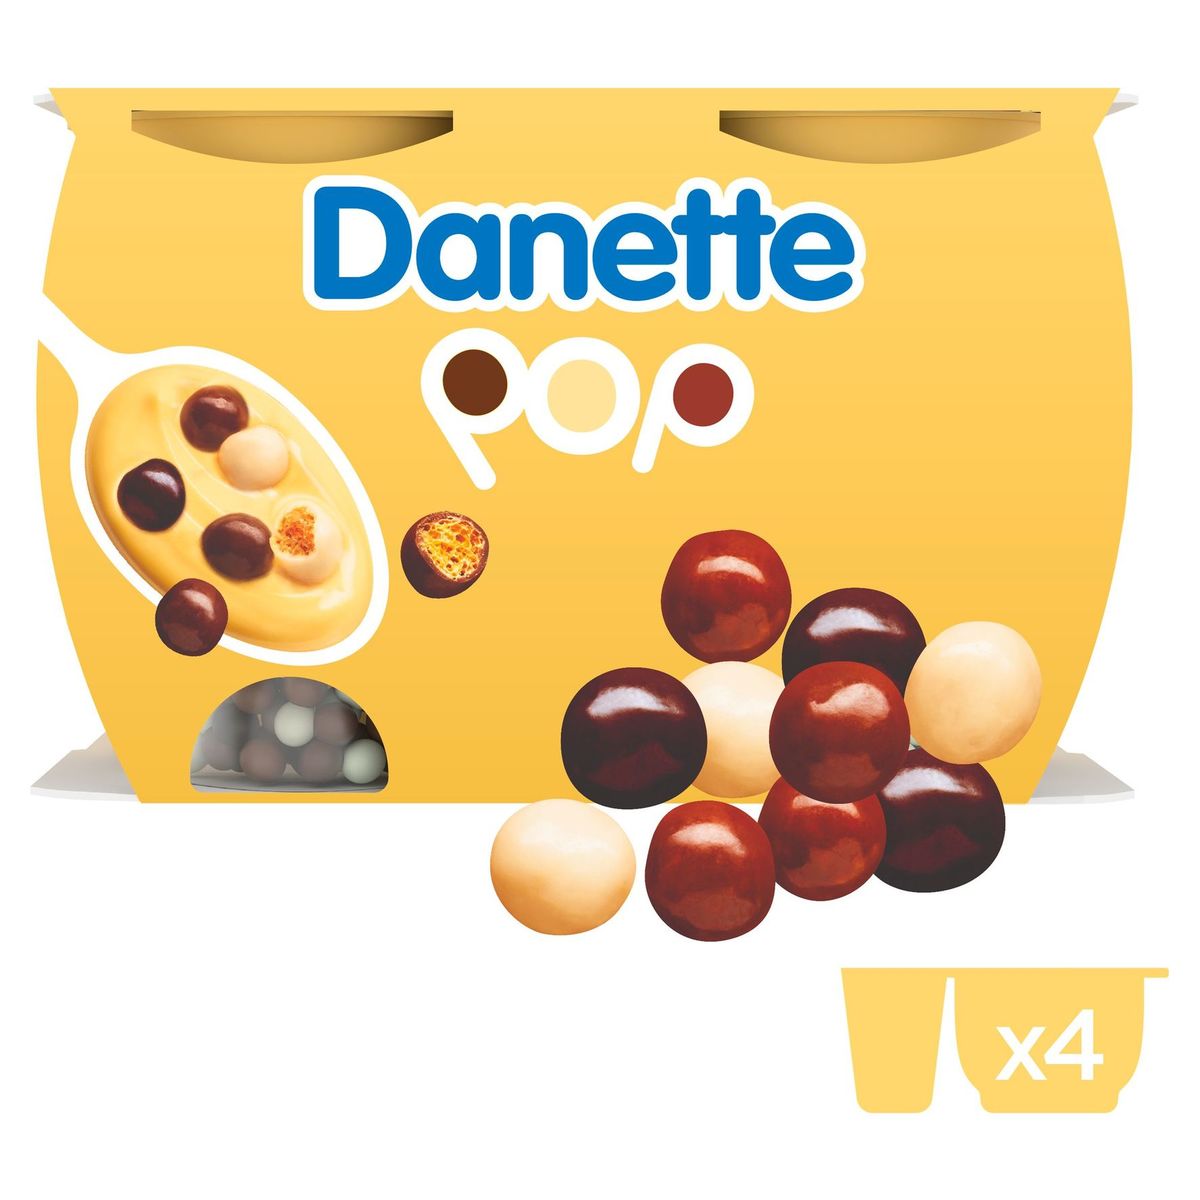 Danette Pop Crème Dessert Saveur Vanille & Billes 3 Chocos 4 x 117 g